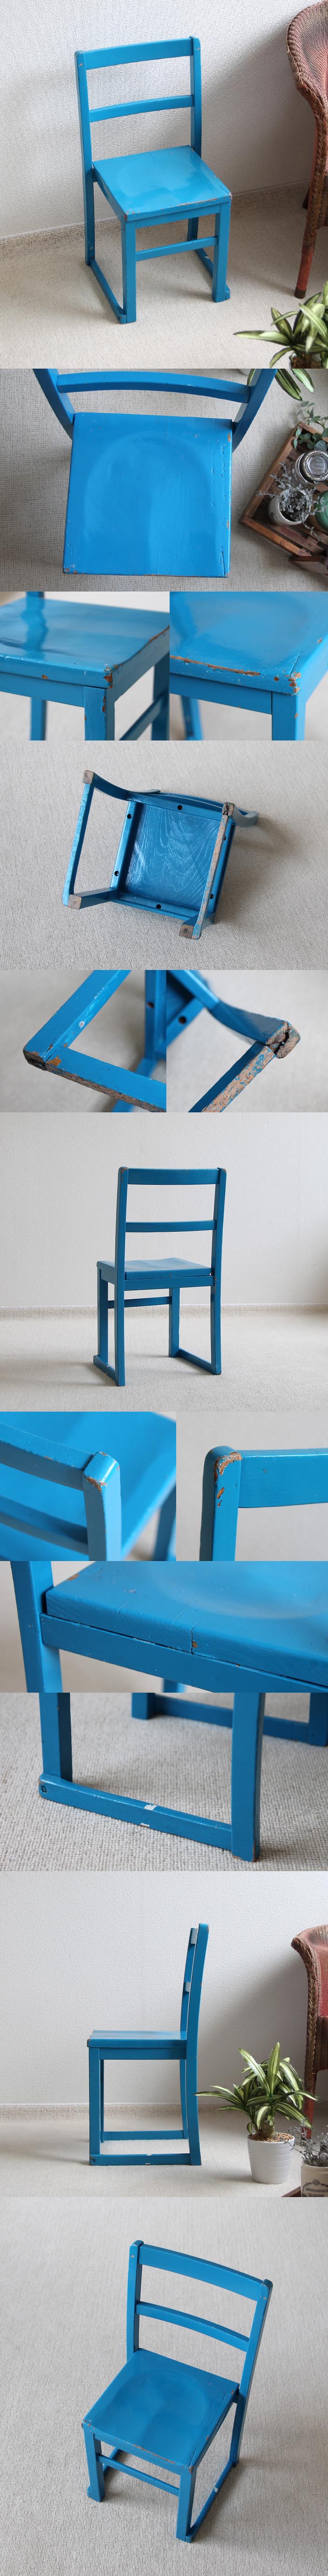 イギリス アンティーク ペイントチャイルドチェア/子供椅子/スクールチェア【置いておくだけで可愛い小さな椅子】Y-132